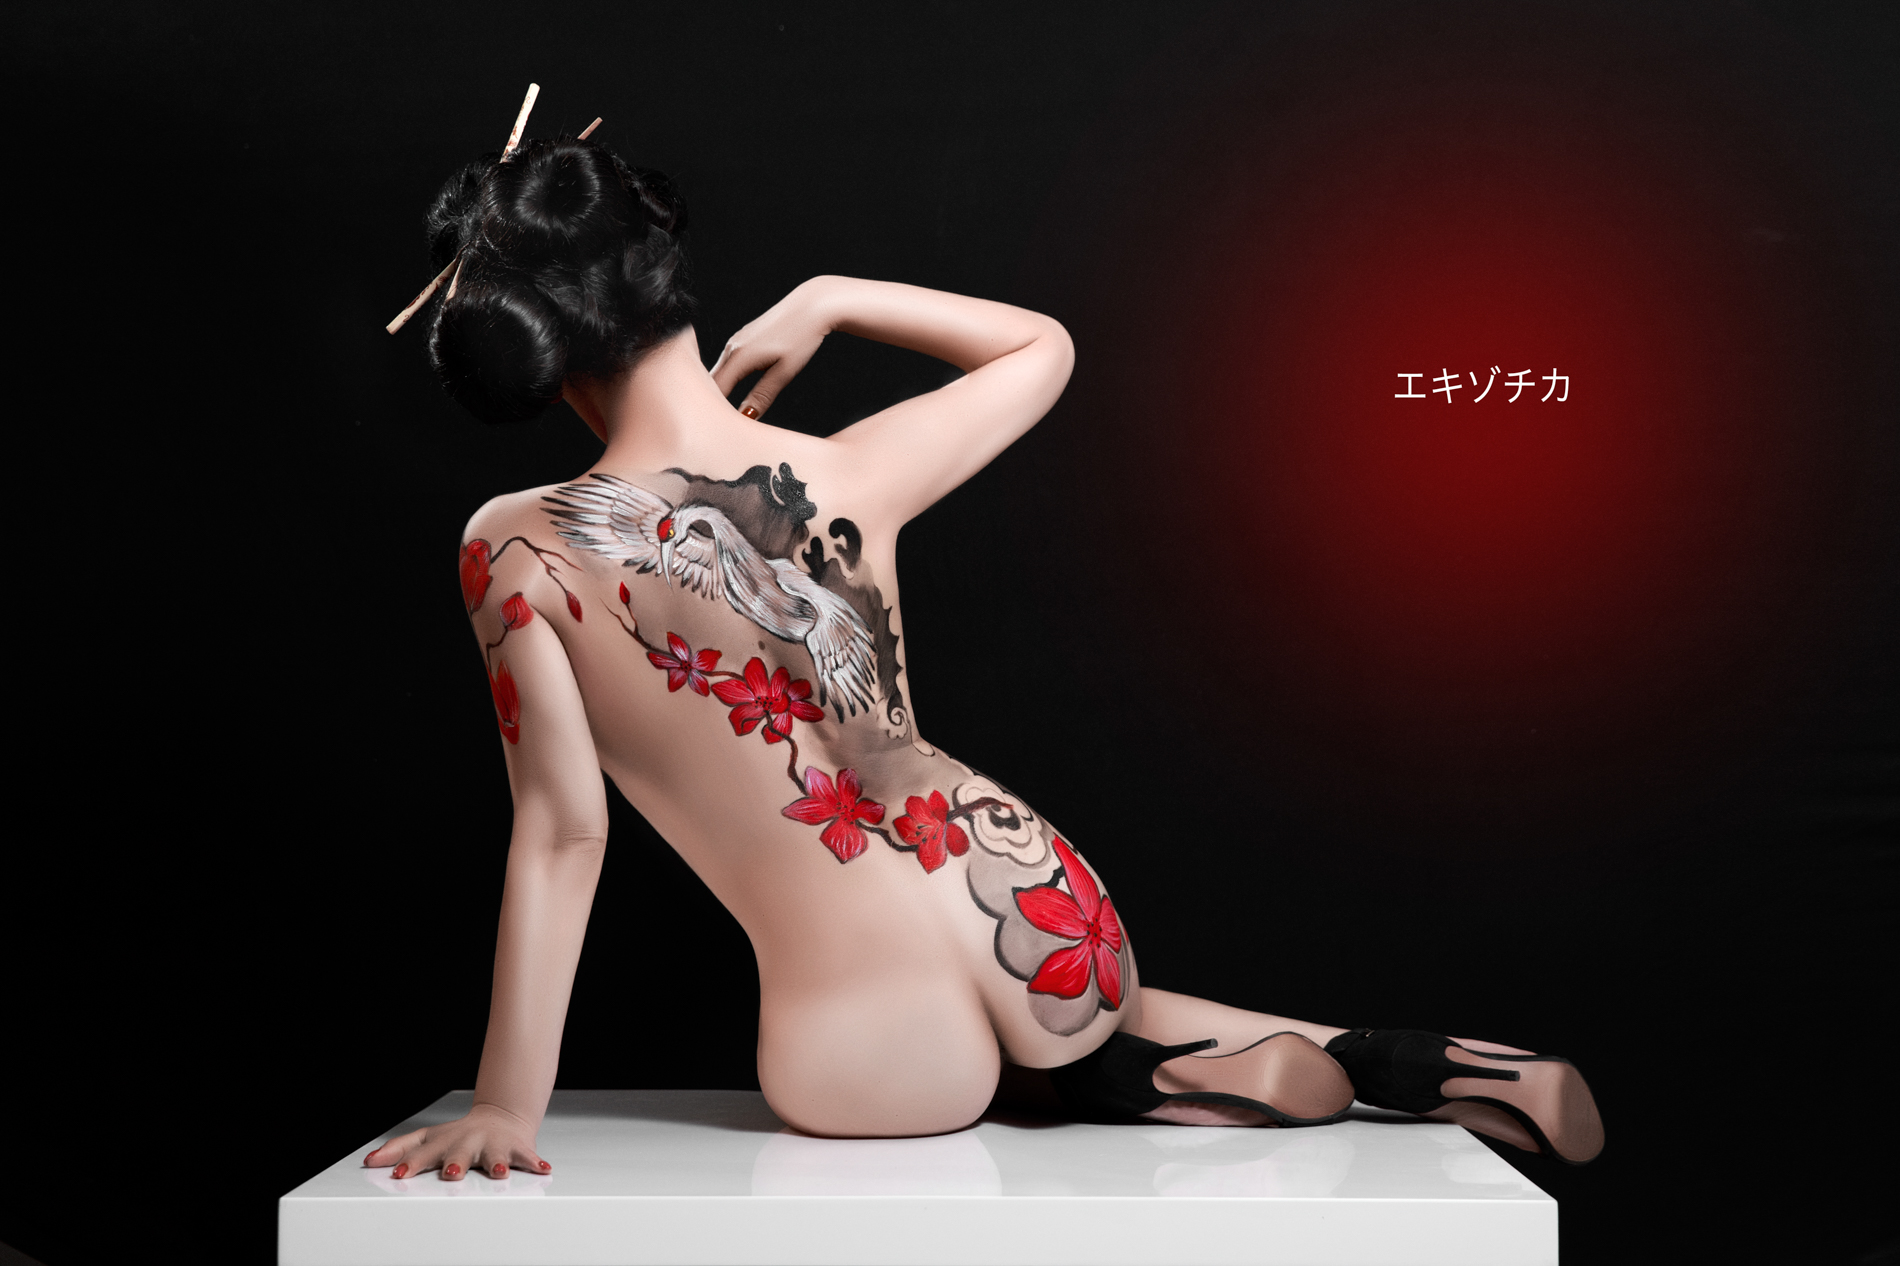 японская художественная эротика фото 62